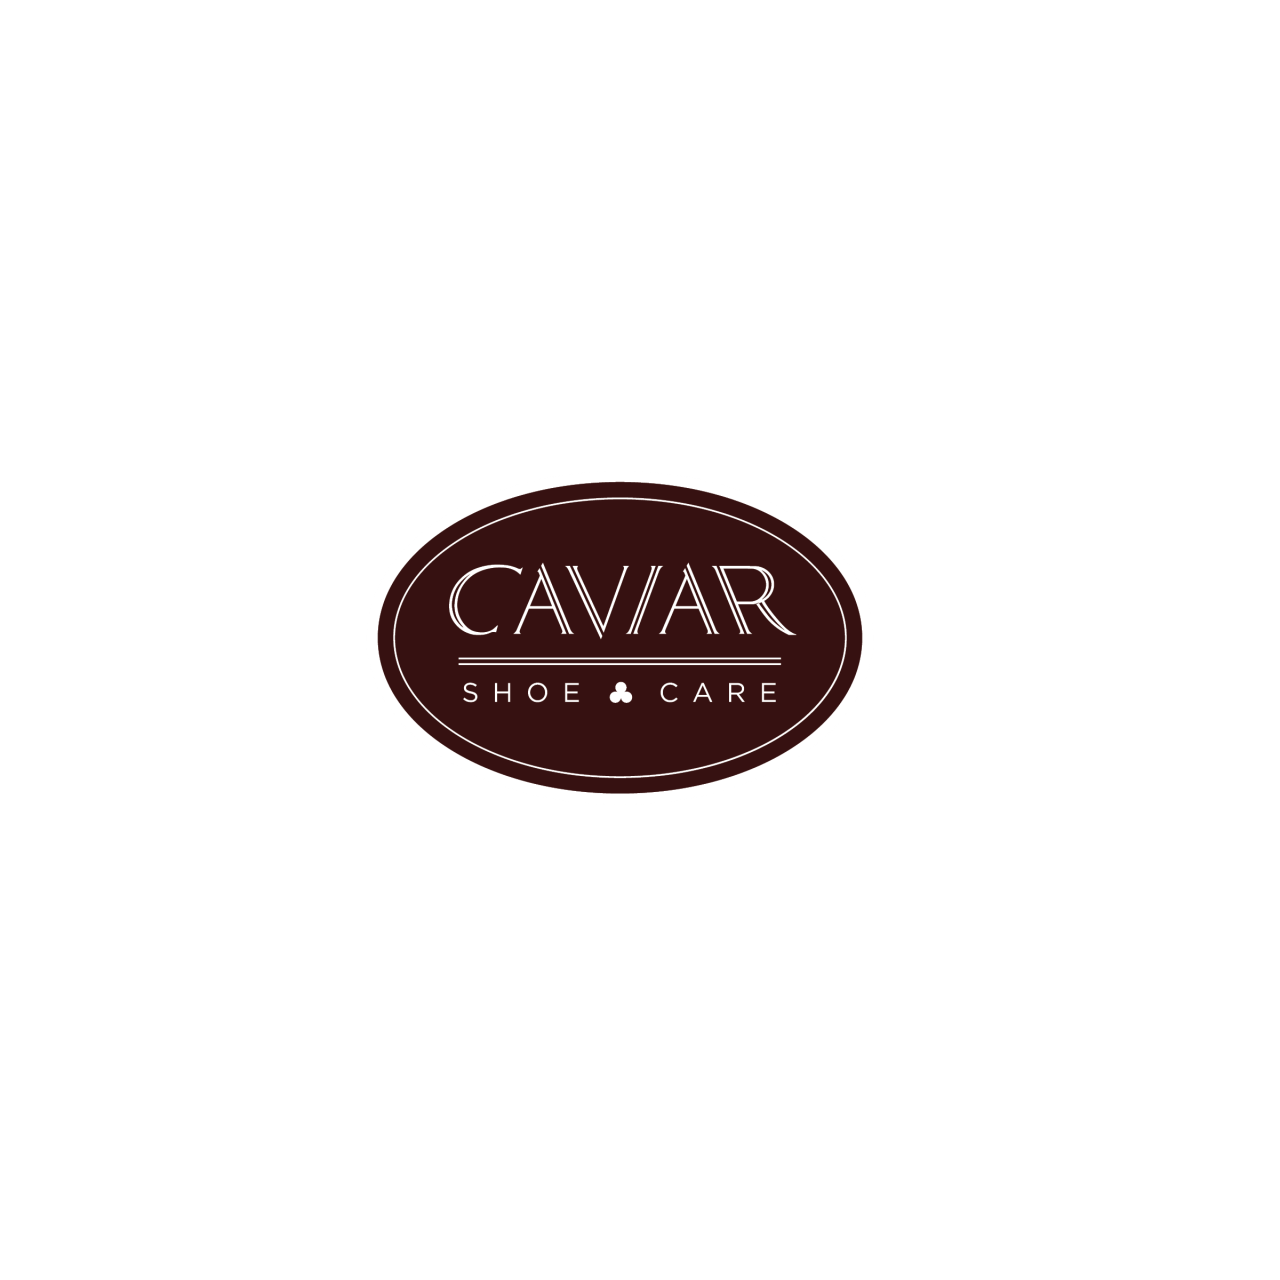 Image of Caviar Shoe Care logo